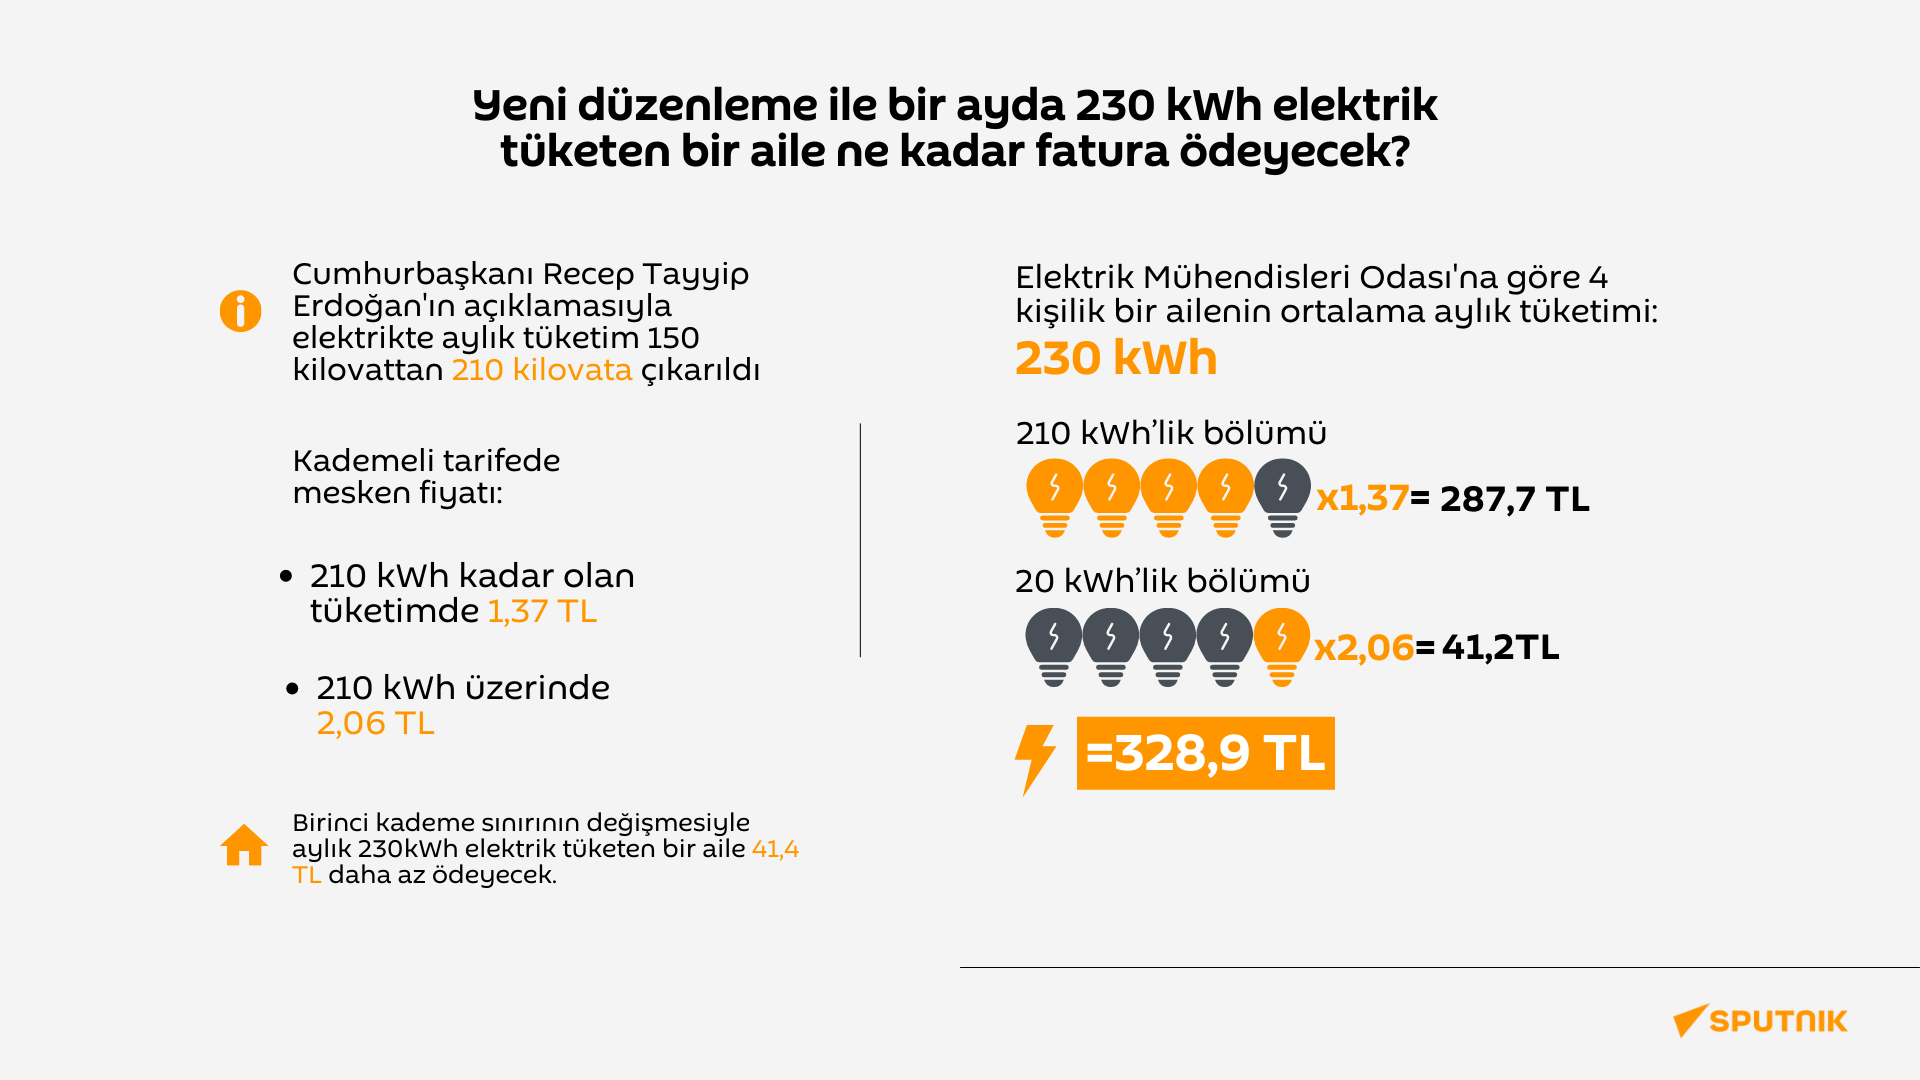 Bir ayda 230 kWh elektrik tüketen bir aile ne kadar fatura ödeyecek?   - Sputnik Türkiye